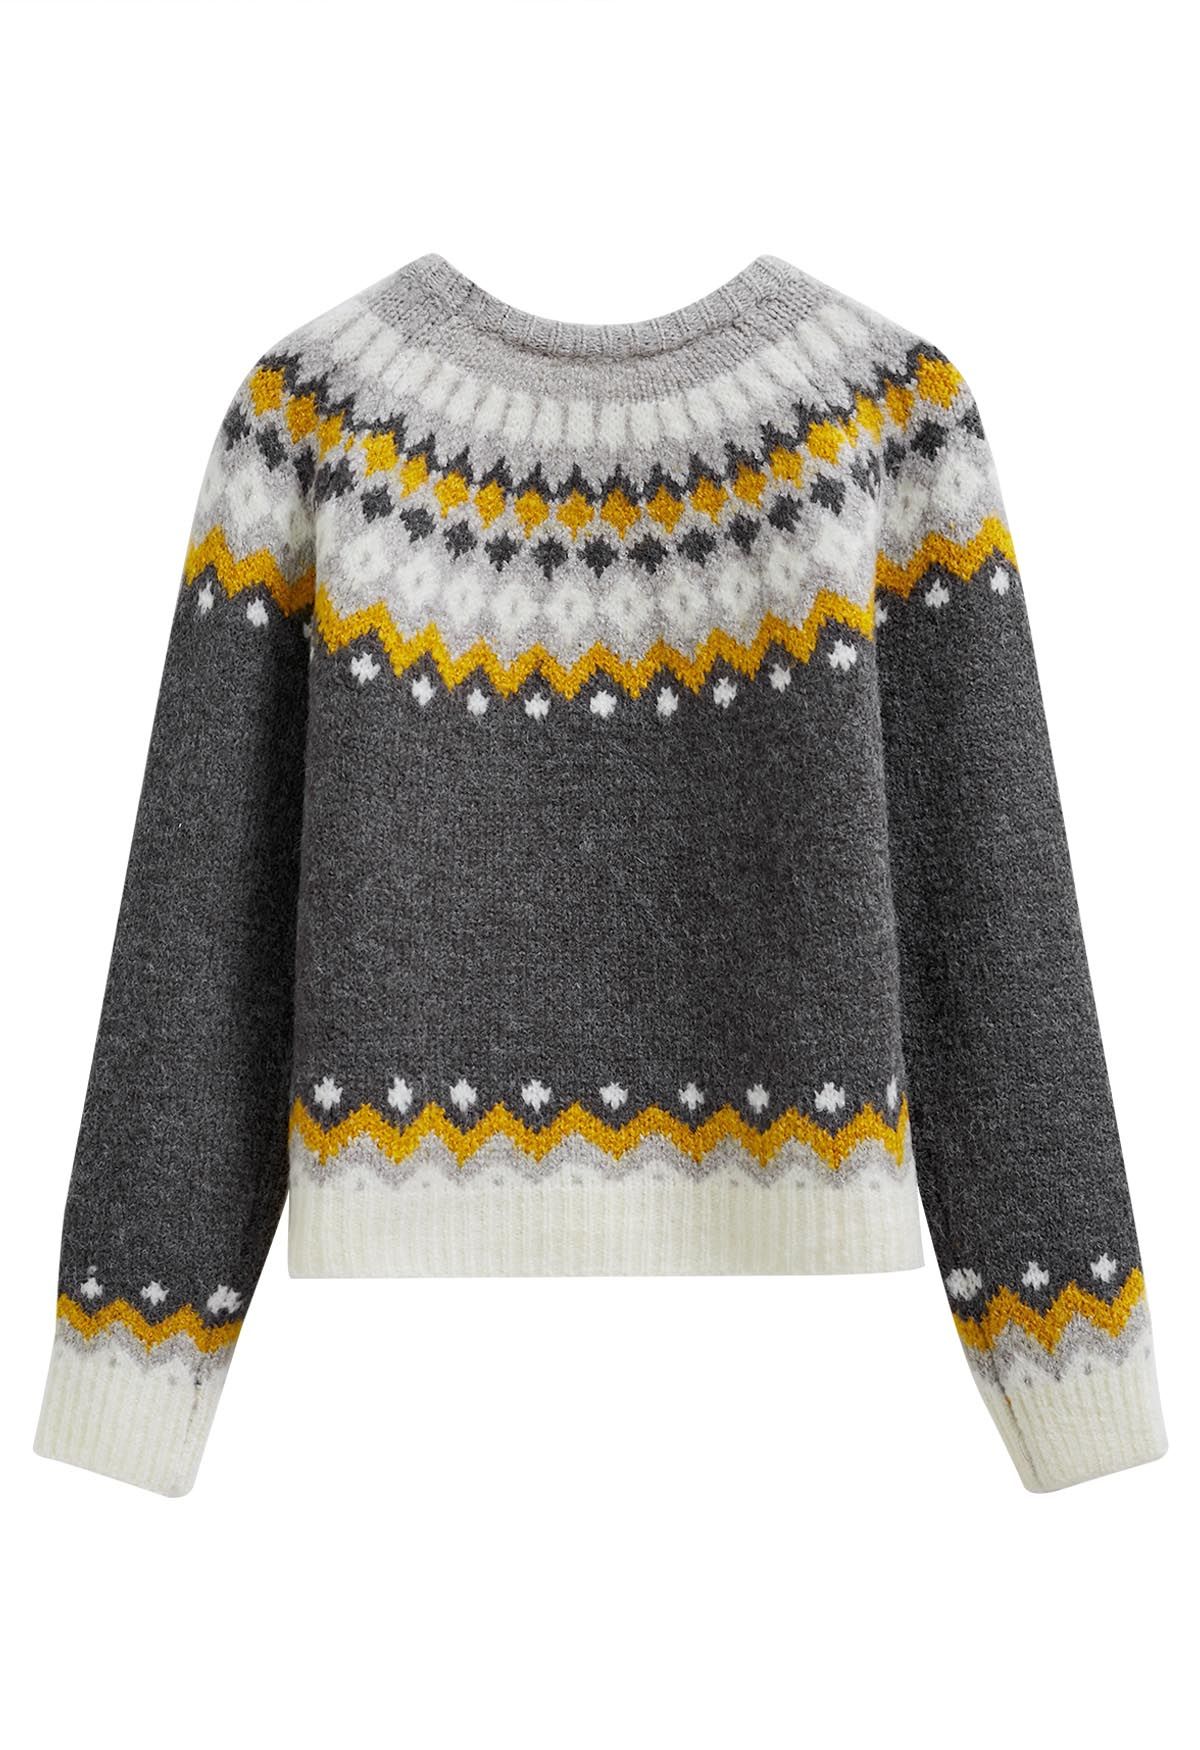 Fair Isle Style Pattern Knit Sweater in Smoke